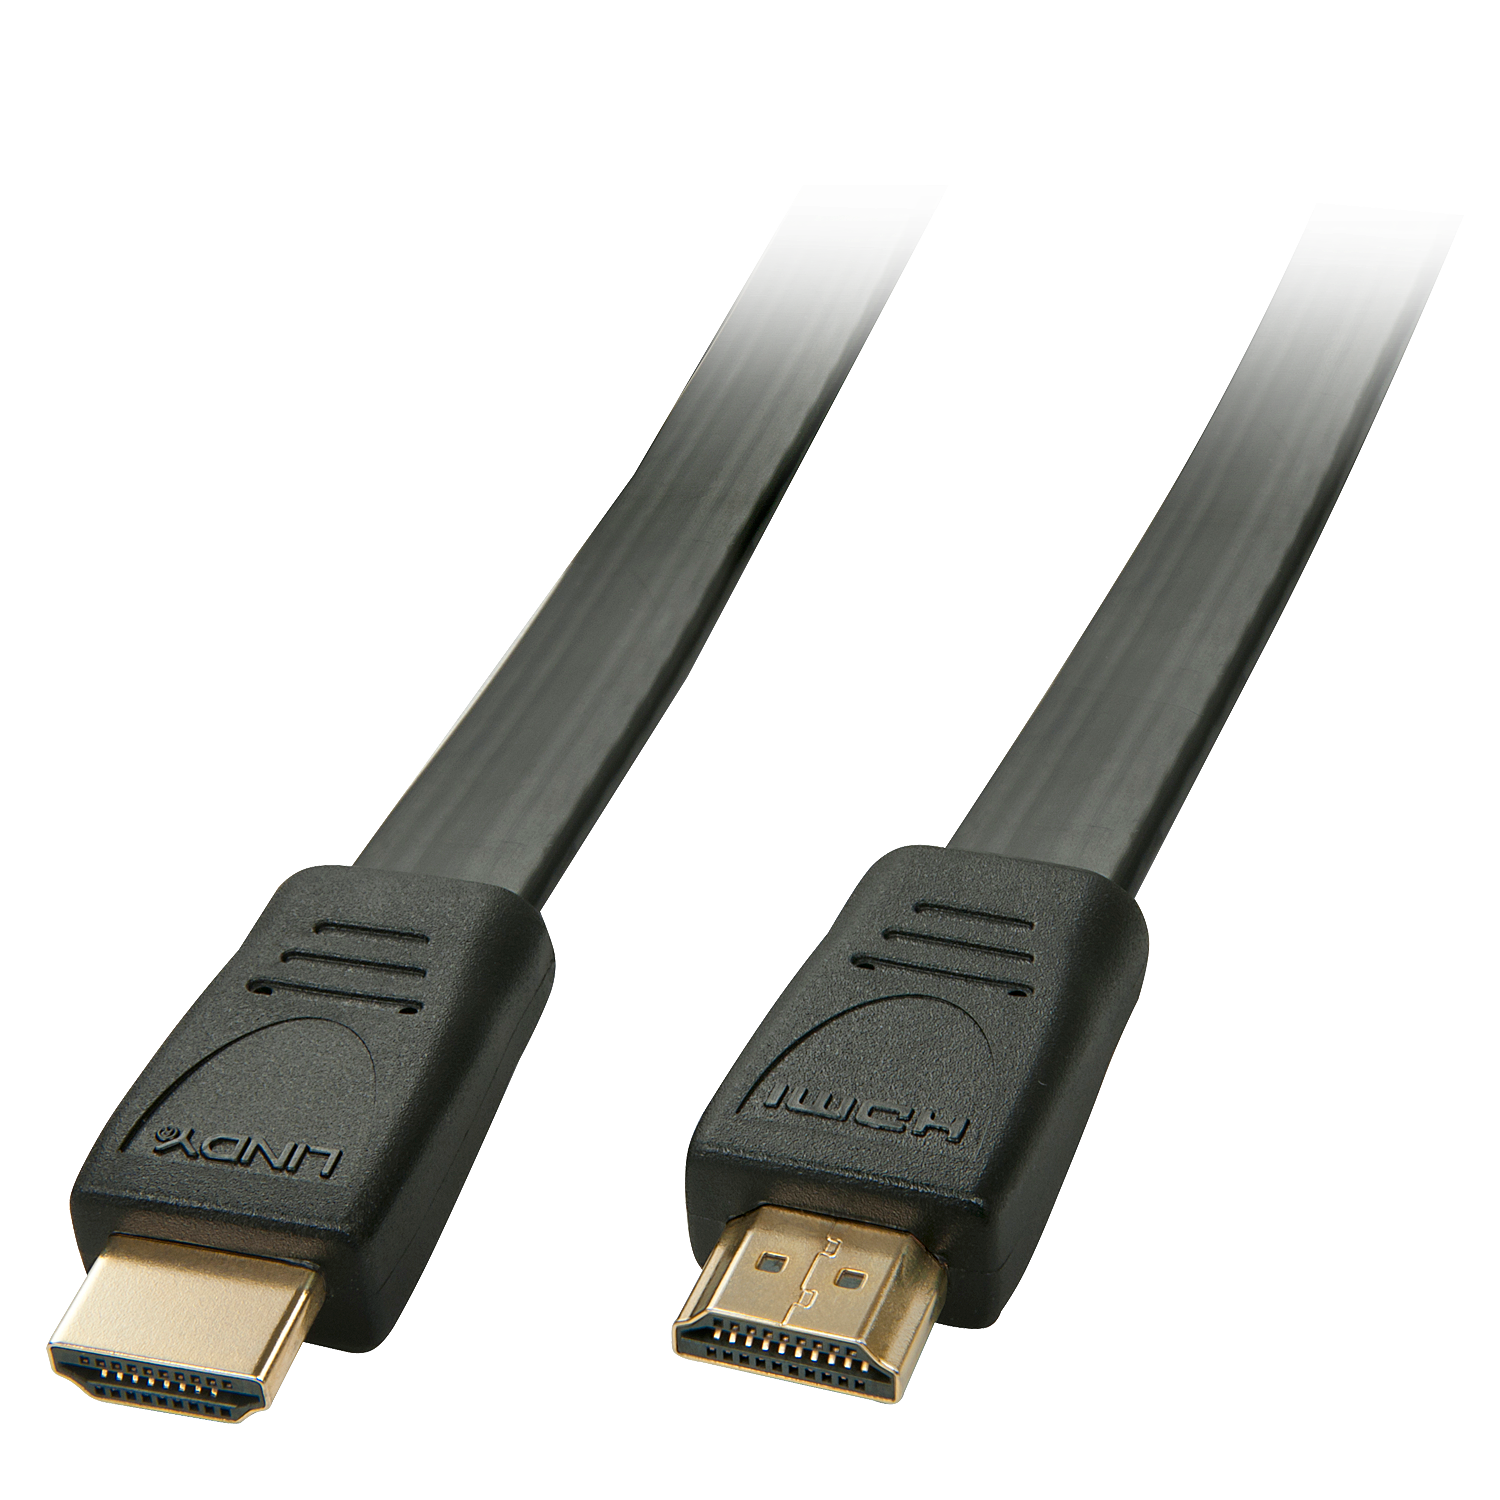 LINDY HDMI High Speed Flachbandkabel 0,5m HDMI 2.0 / HDTV und HDCP kompatibel (36995)